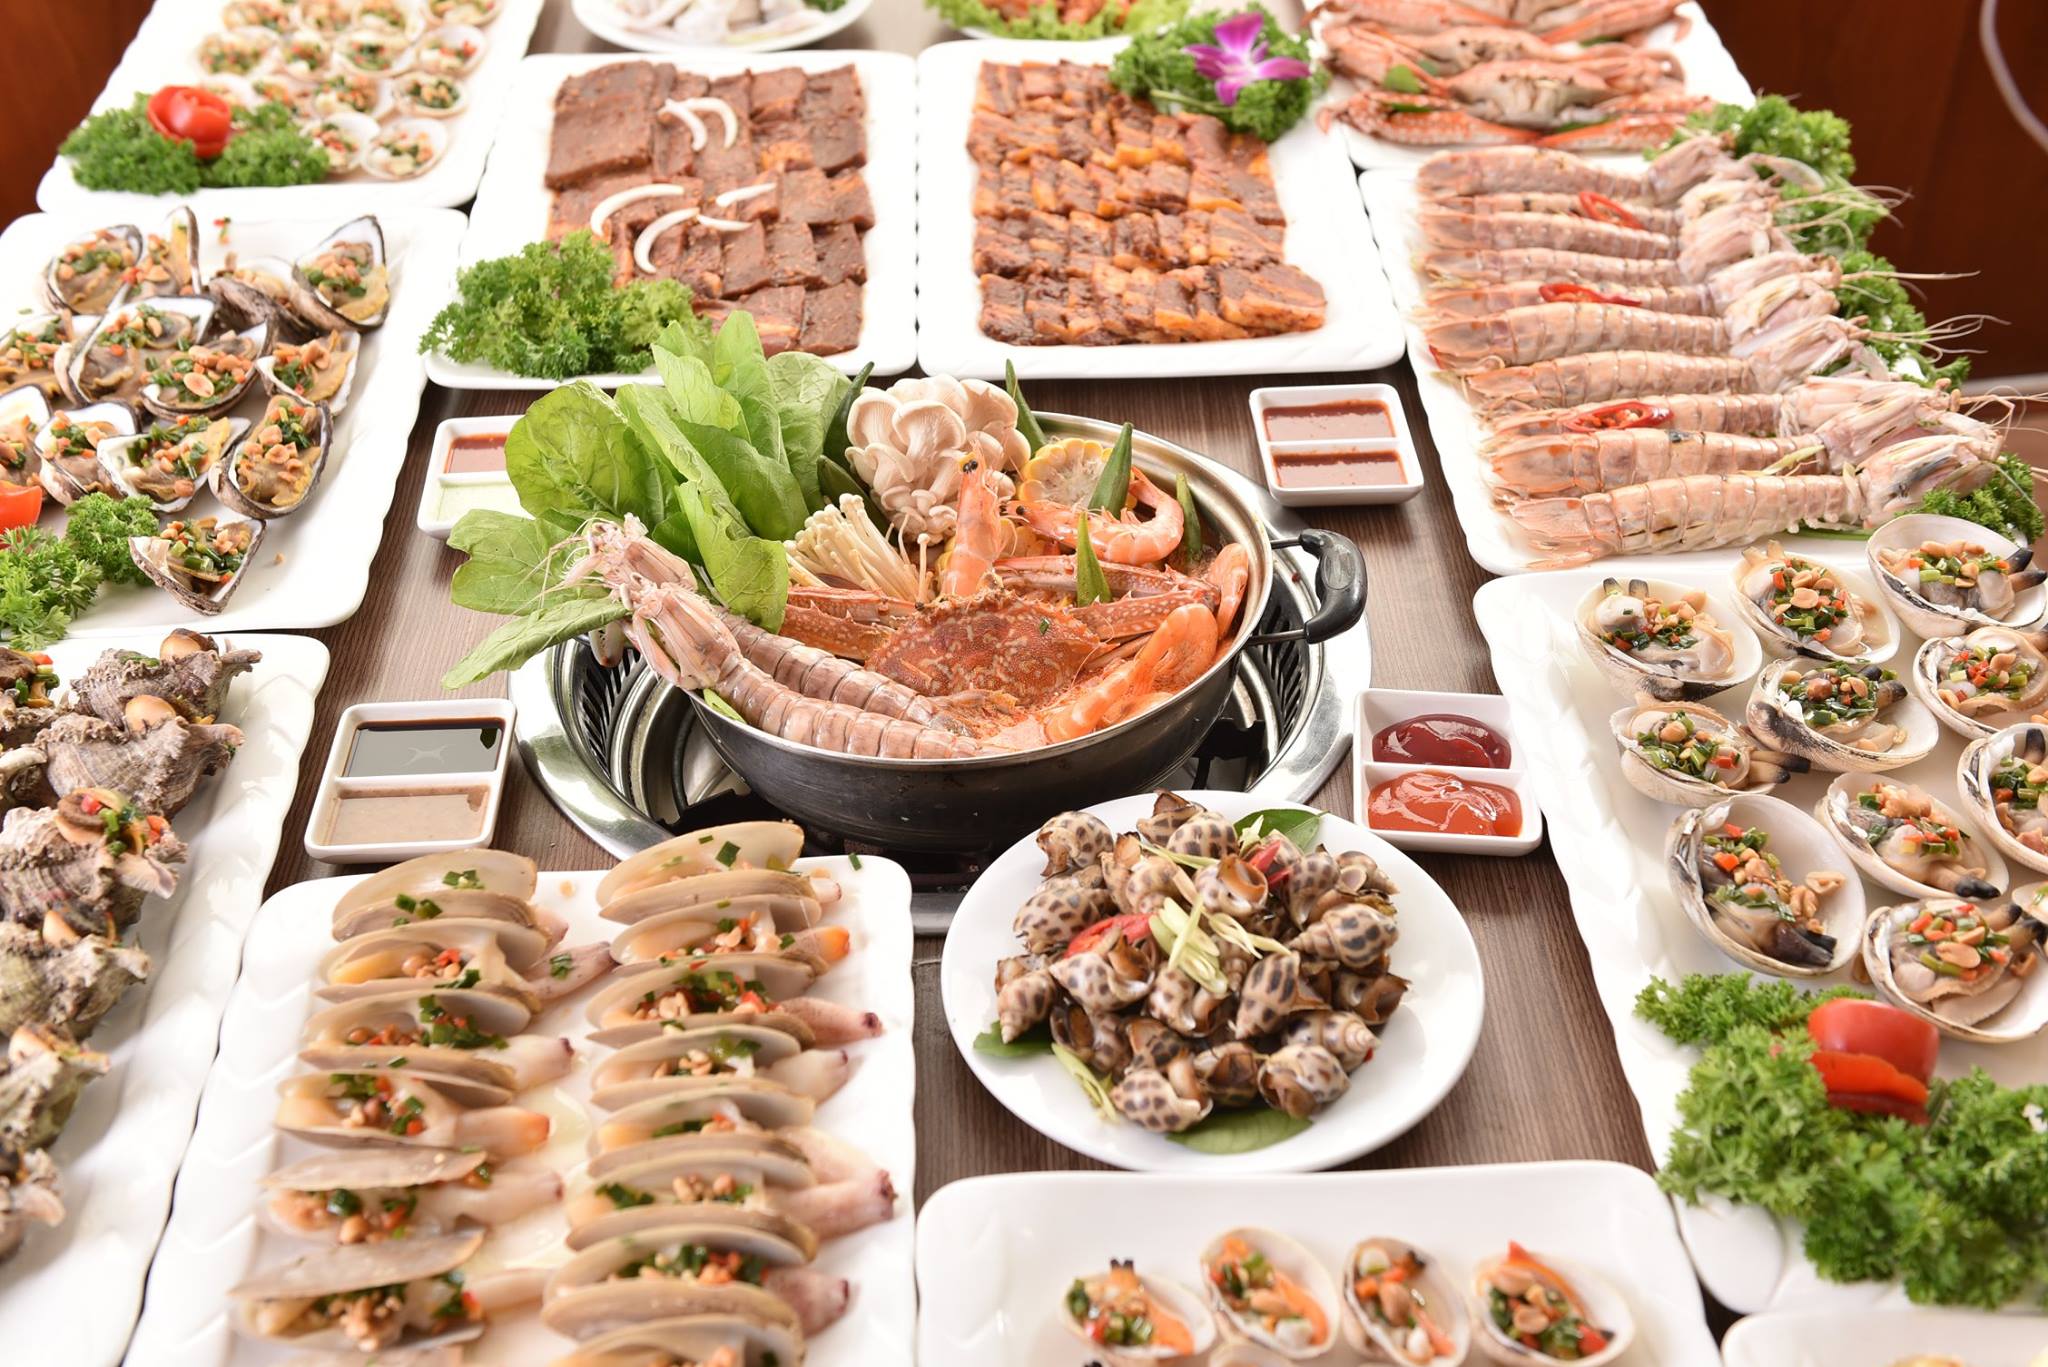 Tại nhà hàng Buffet lẩu nướng hải sản Chef Dzung khách hàng có thể tự chọn đồ ăn thỏa thích và được phục vụ đồ uống tại bàn